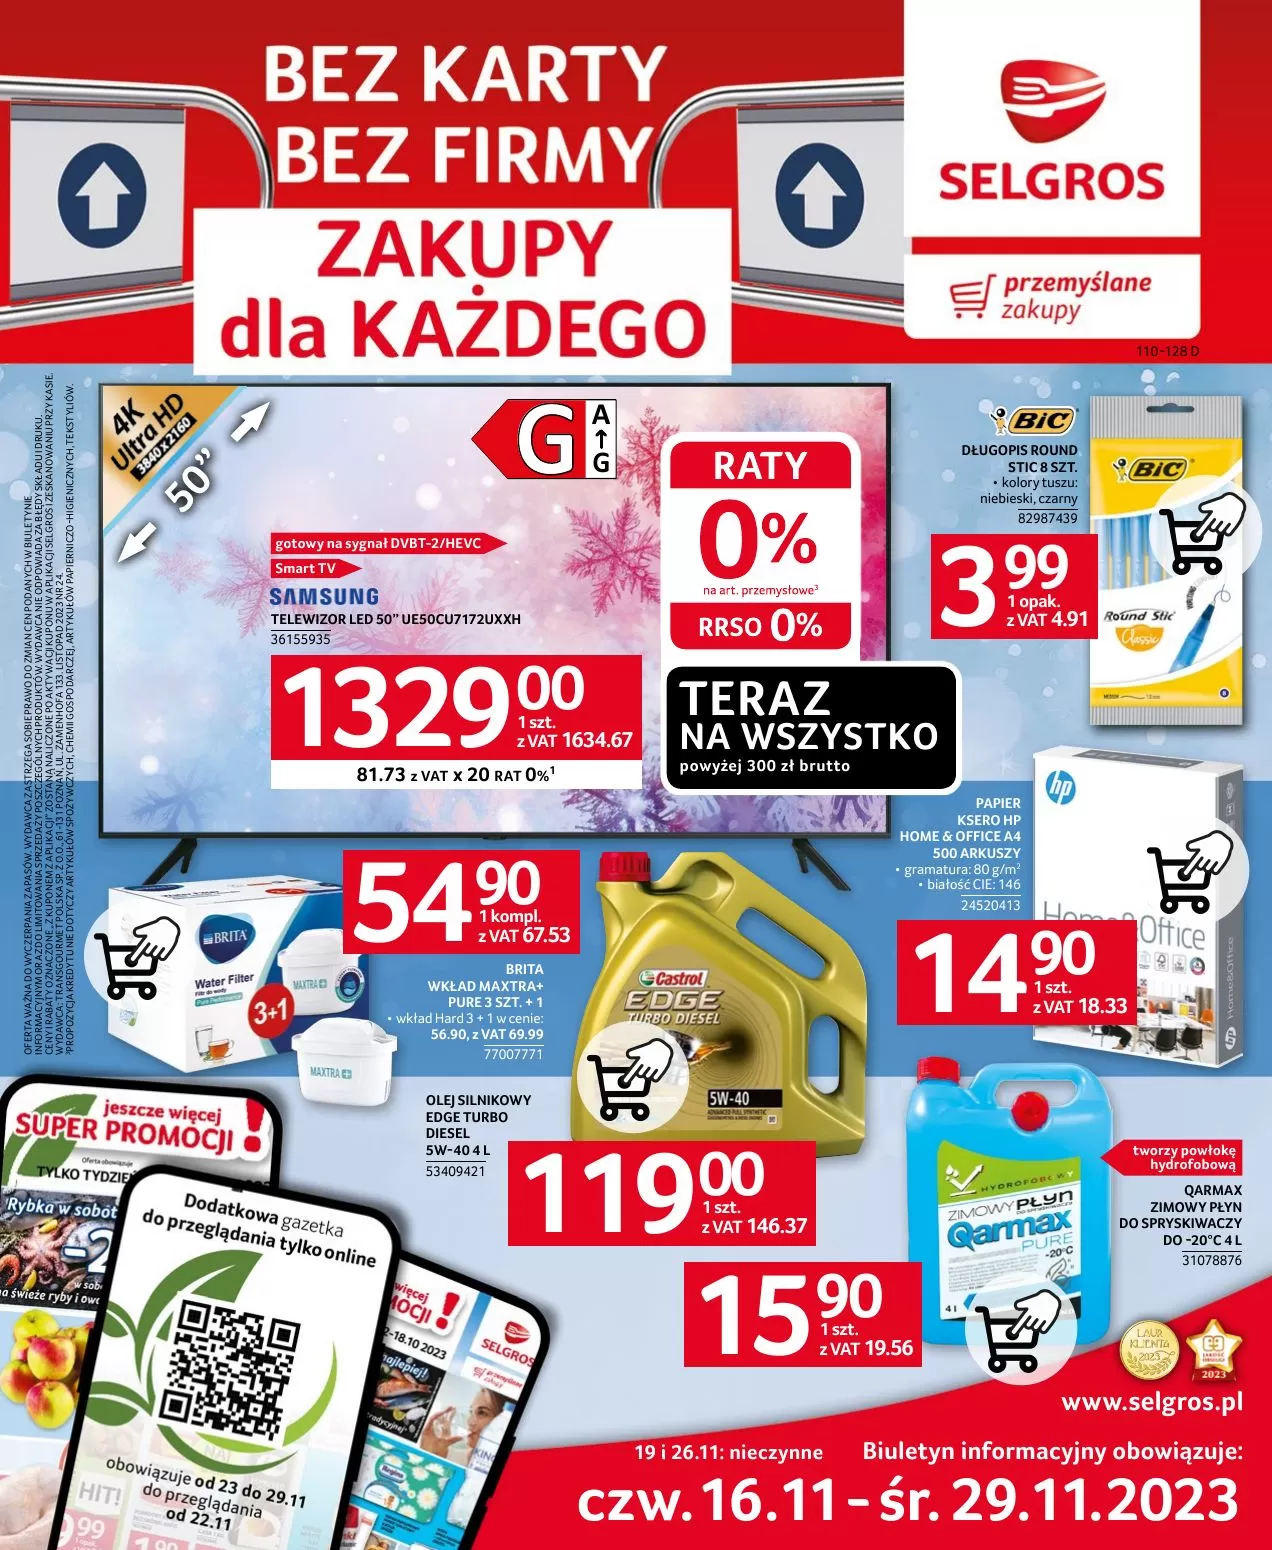 
                        Gazetka promocyjna Selgros. Tytuł: Bez karty bez firmy zakupy dla każdego. Oferta obowiązuje: 2023-11-16 - 2023-11-29